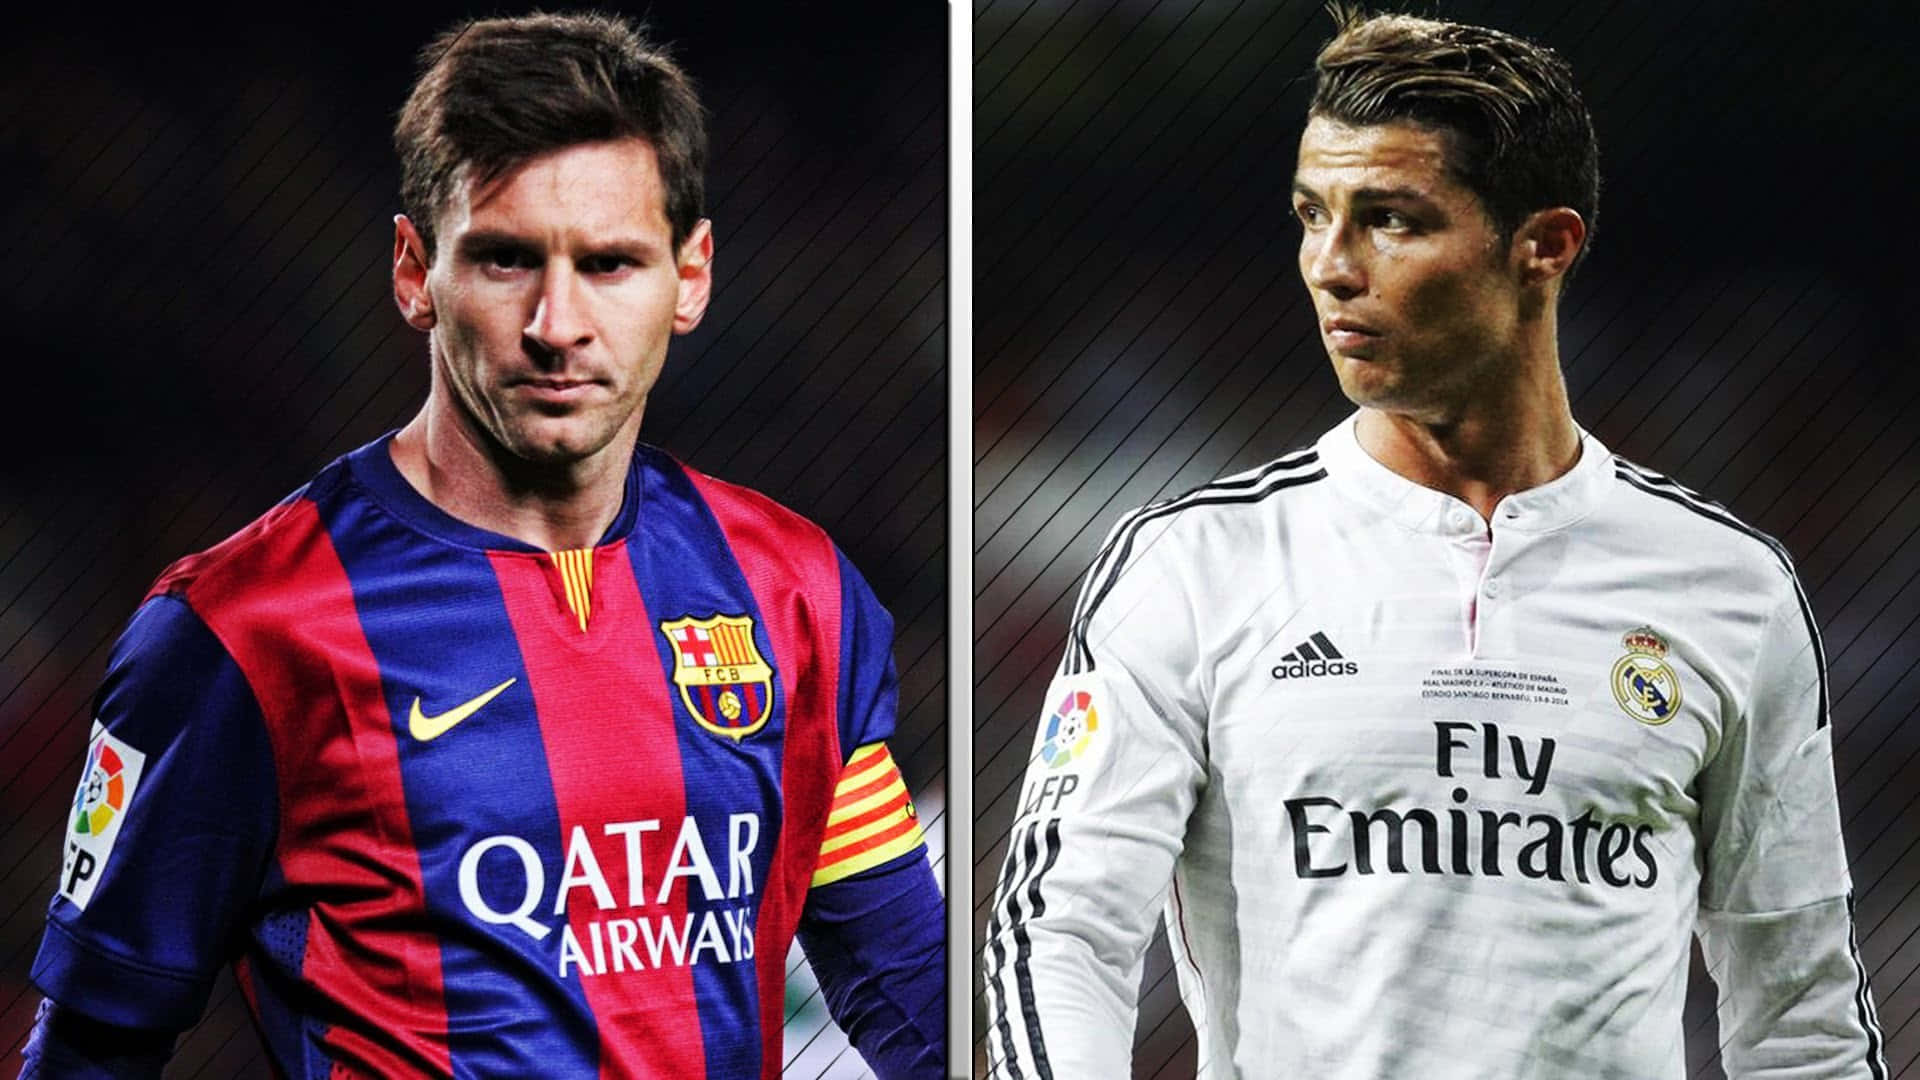 Messi_vs_ Ronaldo_ Comparison Wallpaper